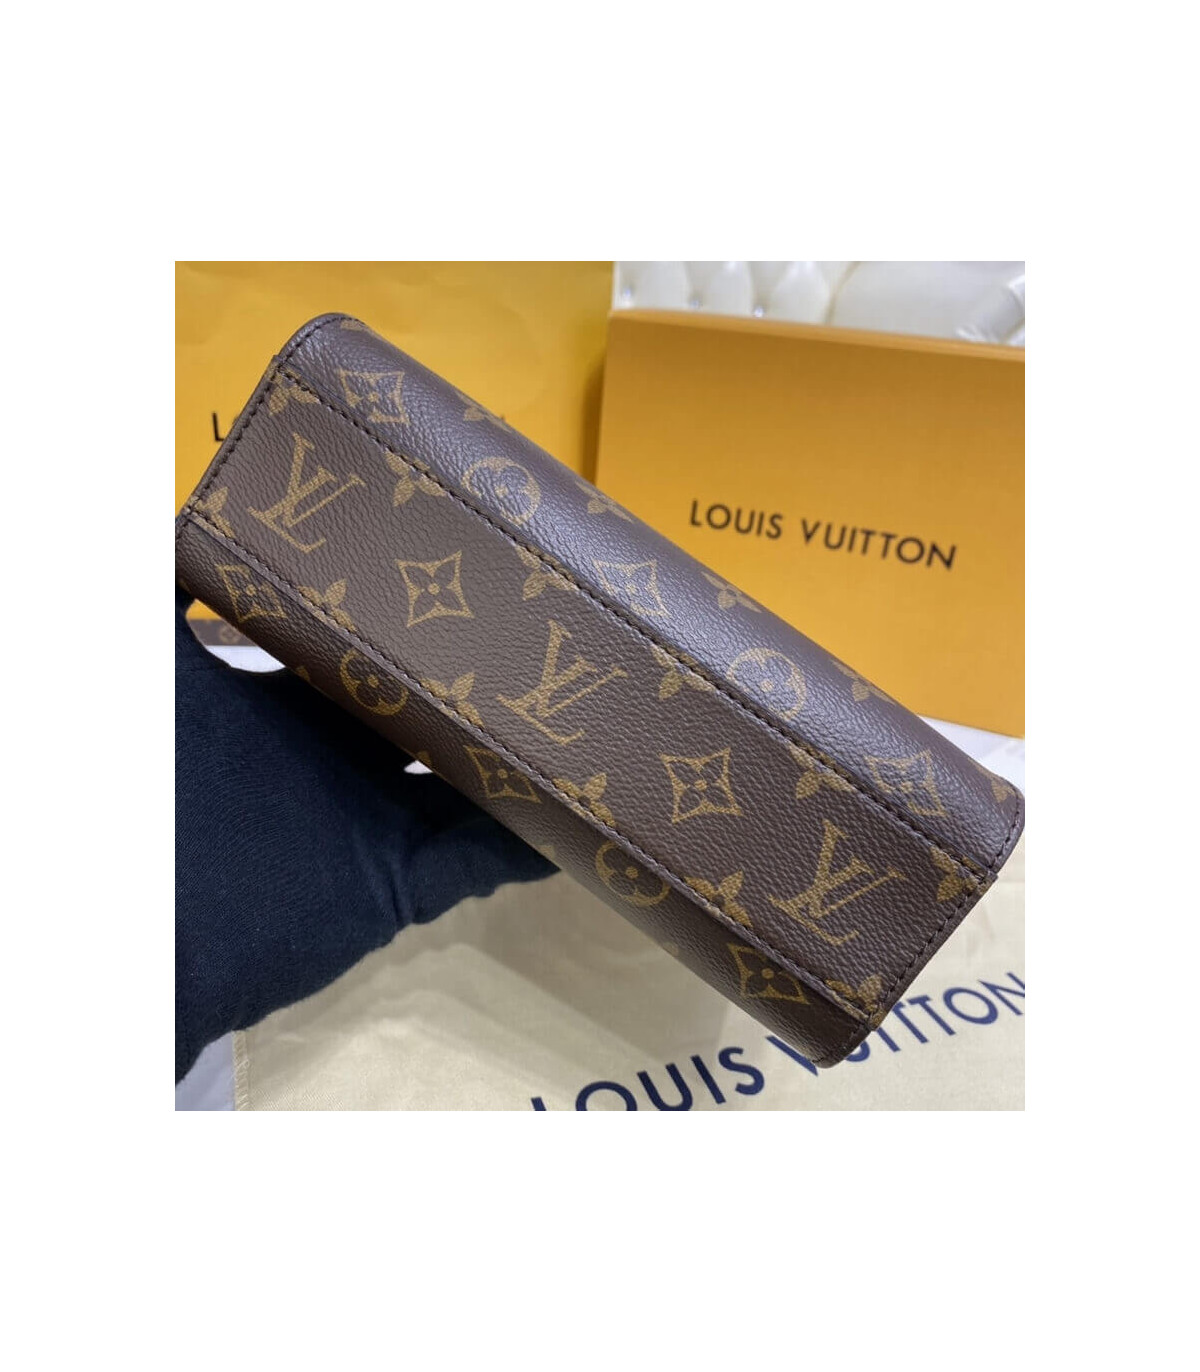 LOUIS VUITTON LV M46265 PETIT SAC PLAT BB 袋款- 日本代購日本進口服飾-中大尺碼,國際精品